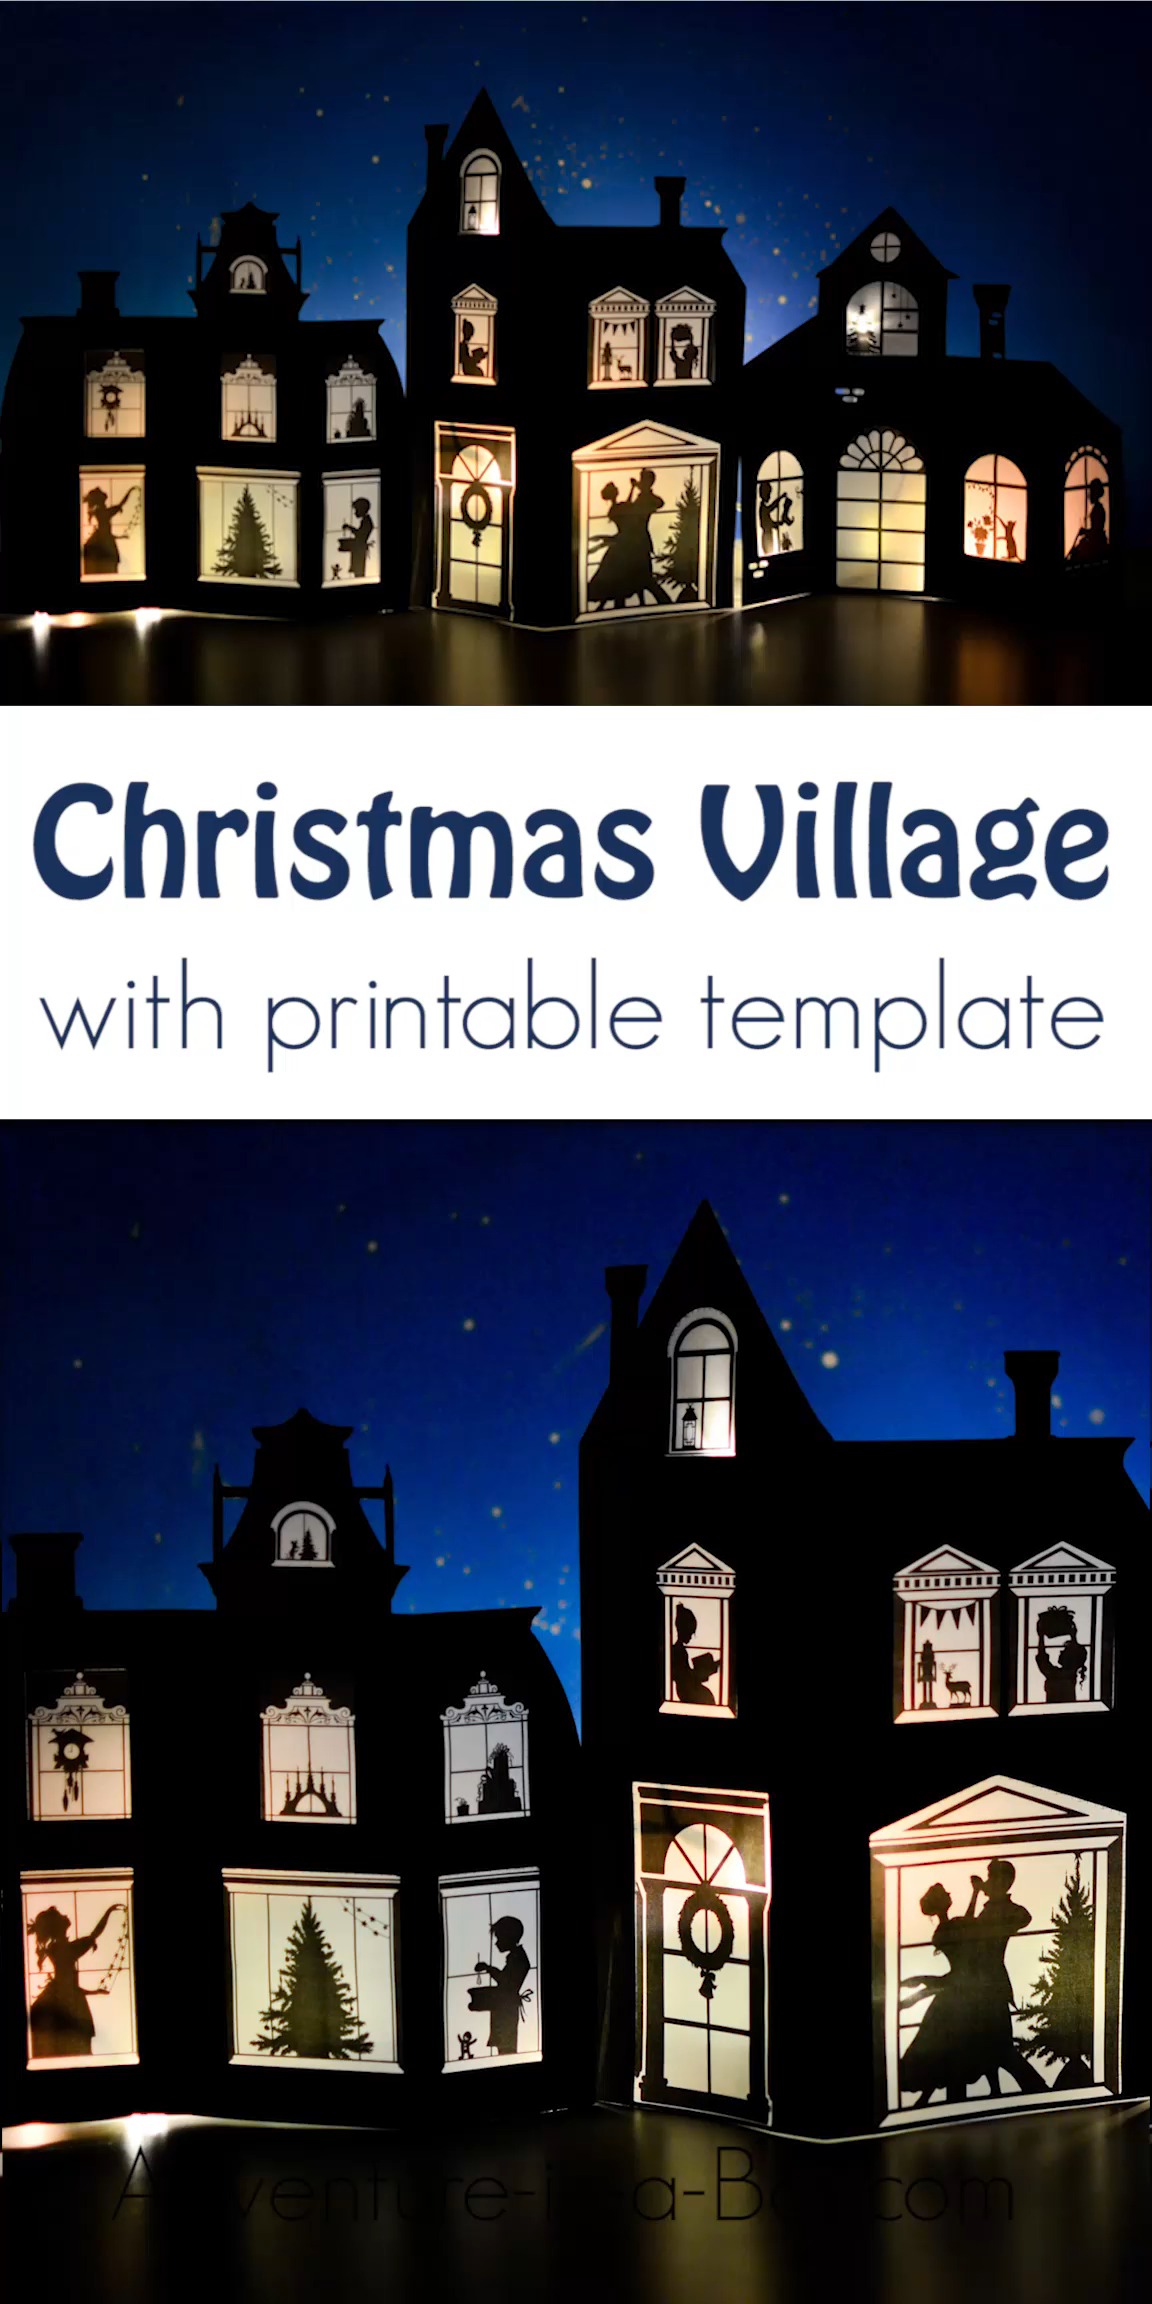 Paper Christmas Village Templates - Paper Christmas Village Templates -   16 diy Christmas Decorations for mantle ideas